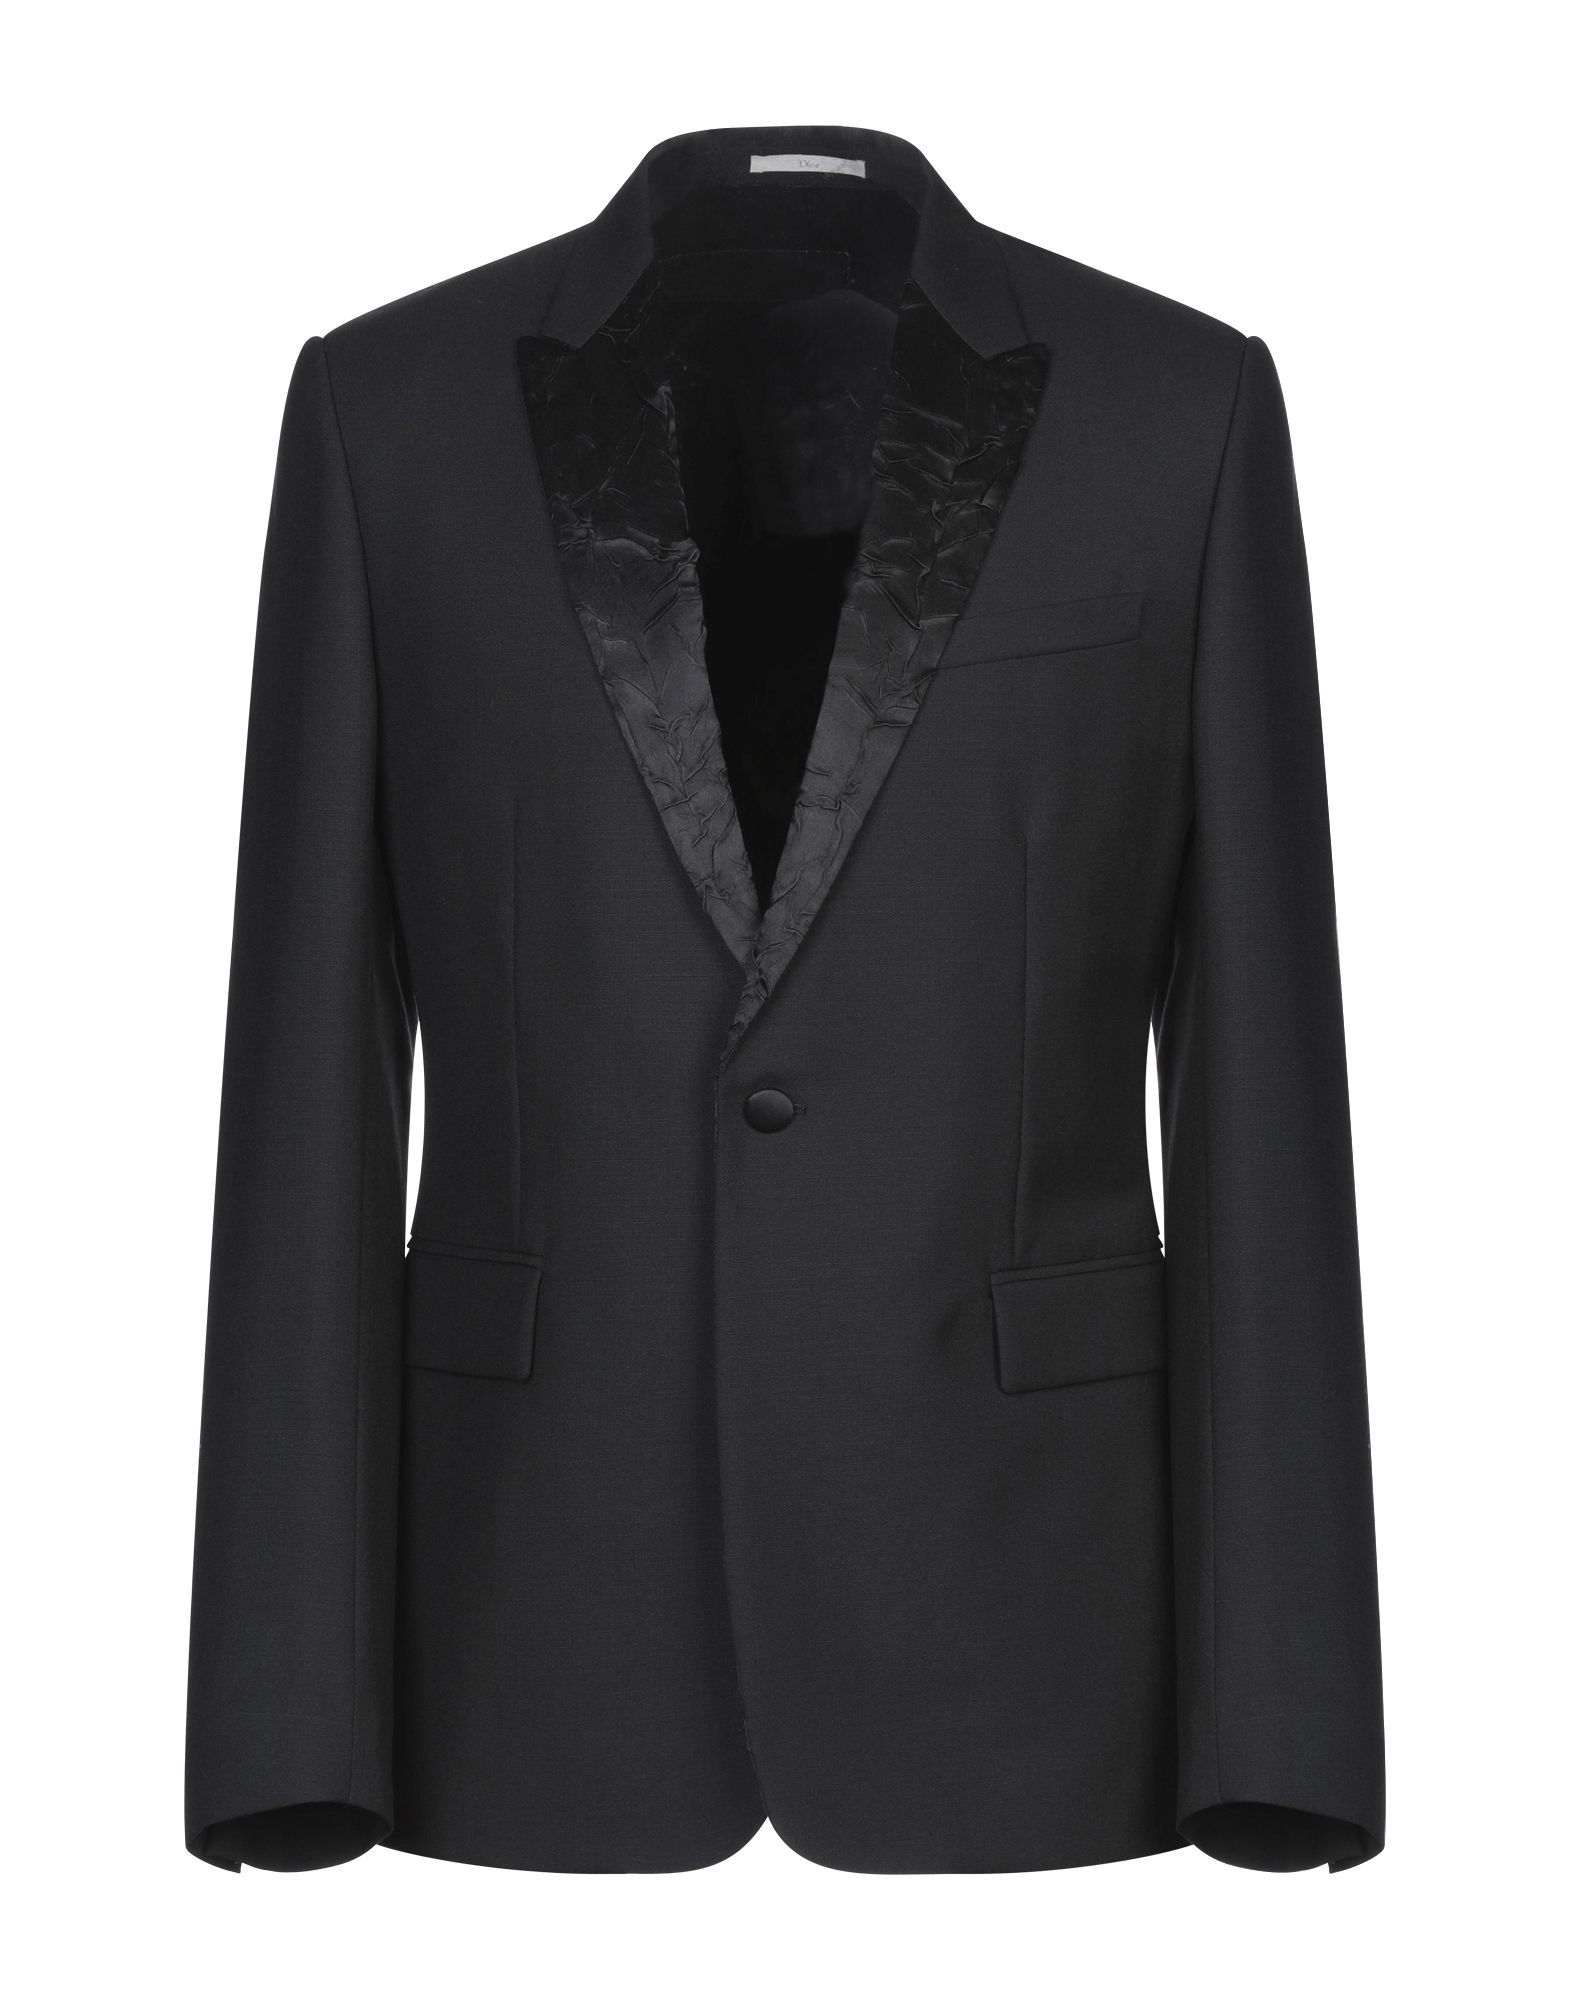 ディオールオム(Dior homme) メンズジャケット・アウター | 通販・人気ランキング - 価格.com